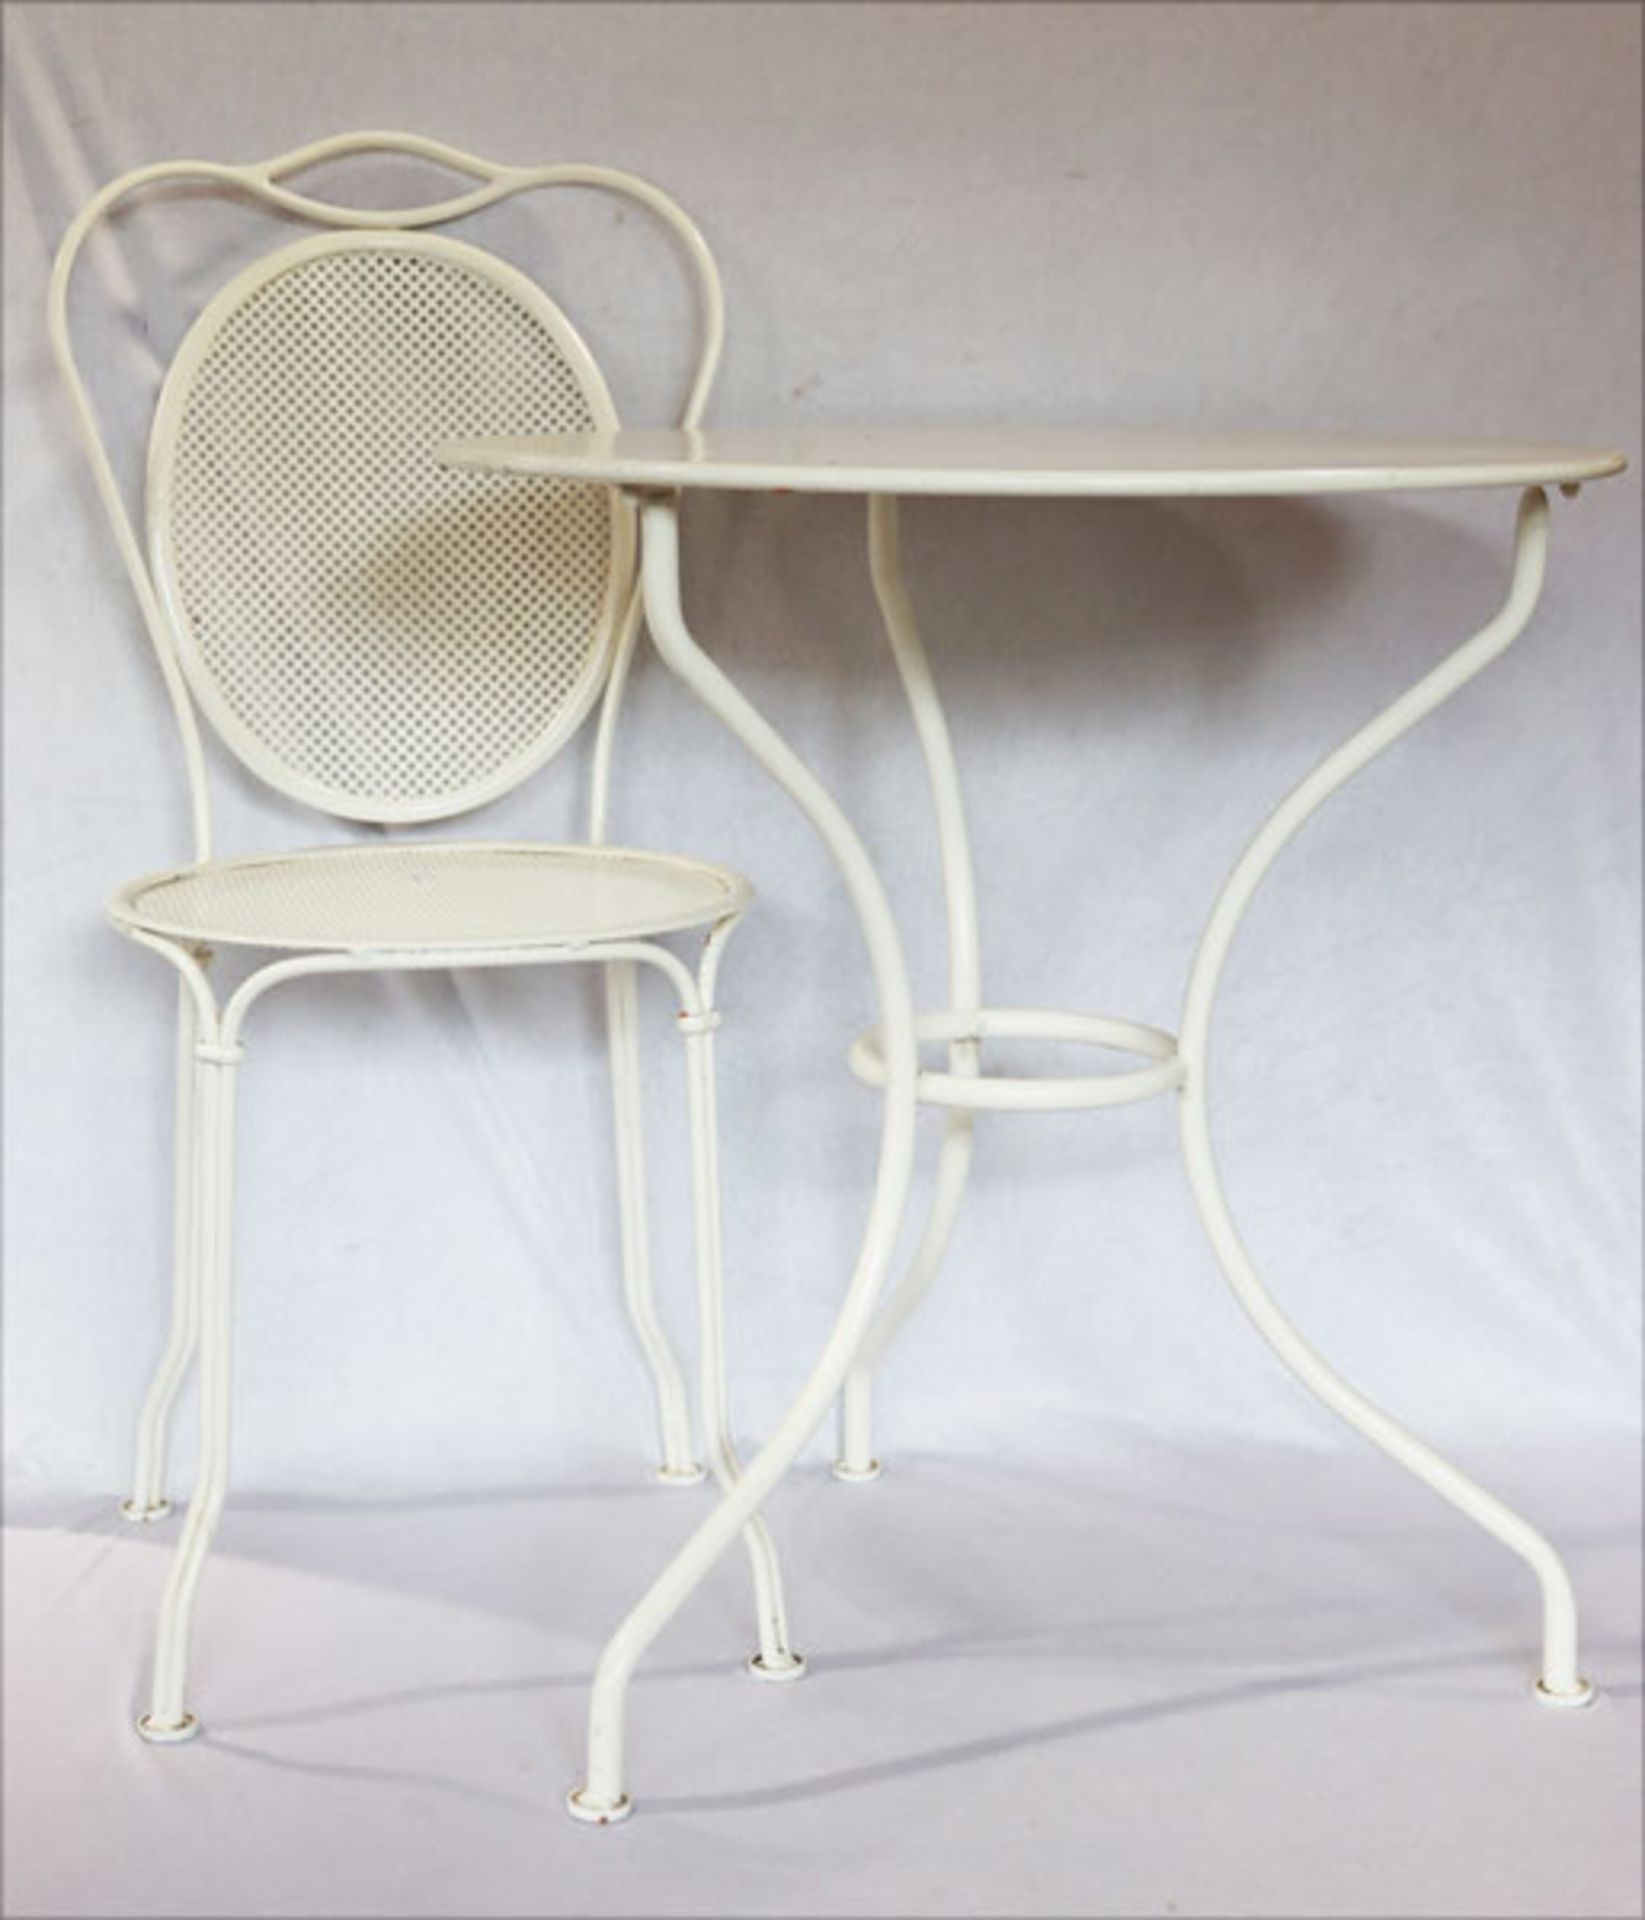 Garten-Eisengarnitur: runder Tisch auf 3 Beinen, H 72 cm, D 66 cm, und 2 passende Stühle, H 90 cm, D